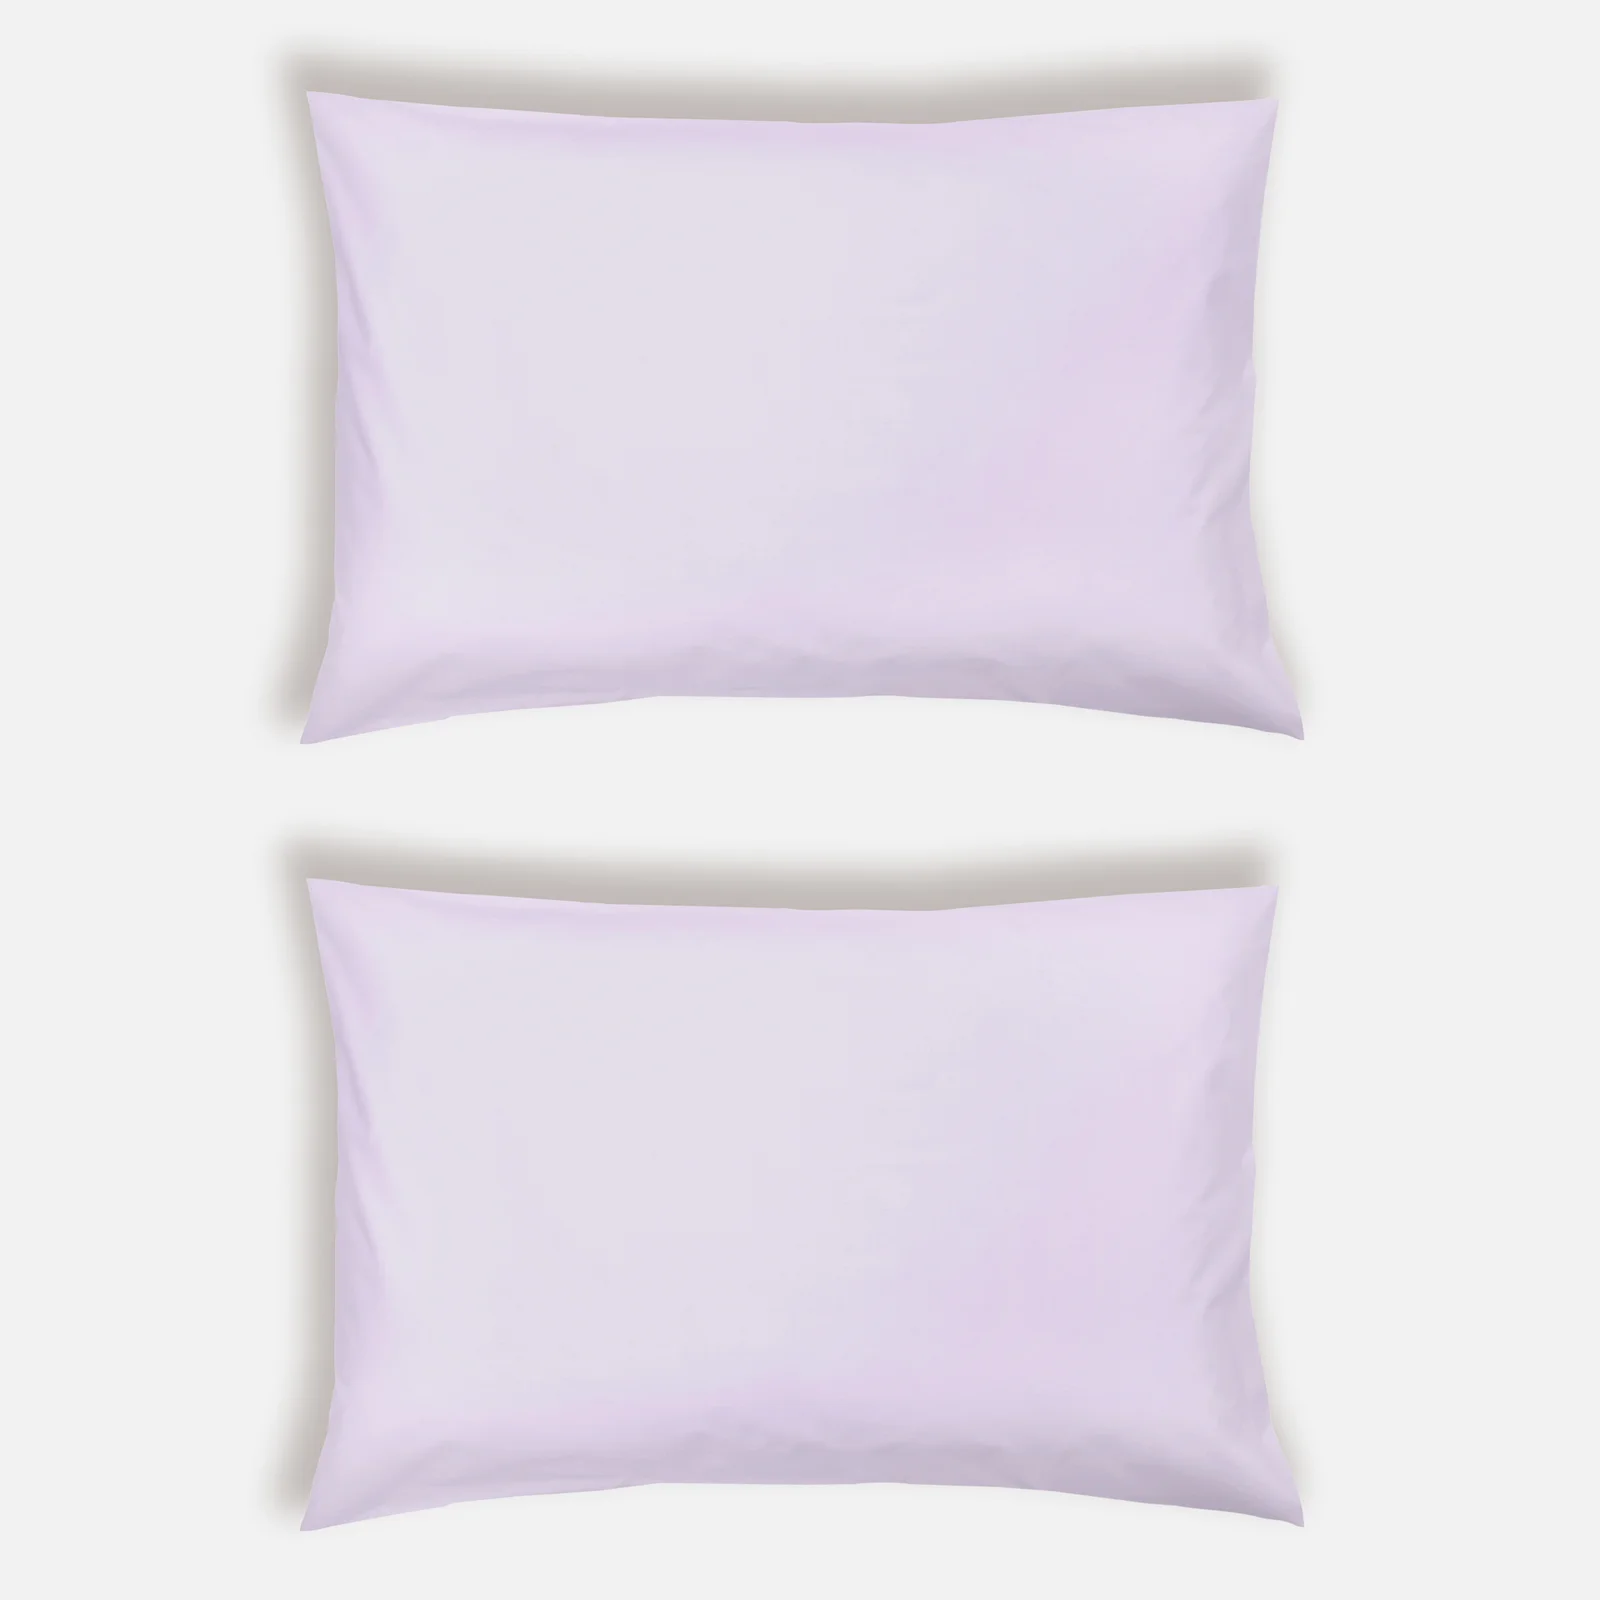 ïn home 200 Thread Count 100% Organic Cotton Pillowcase Pair - Lilac Image 1